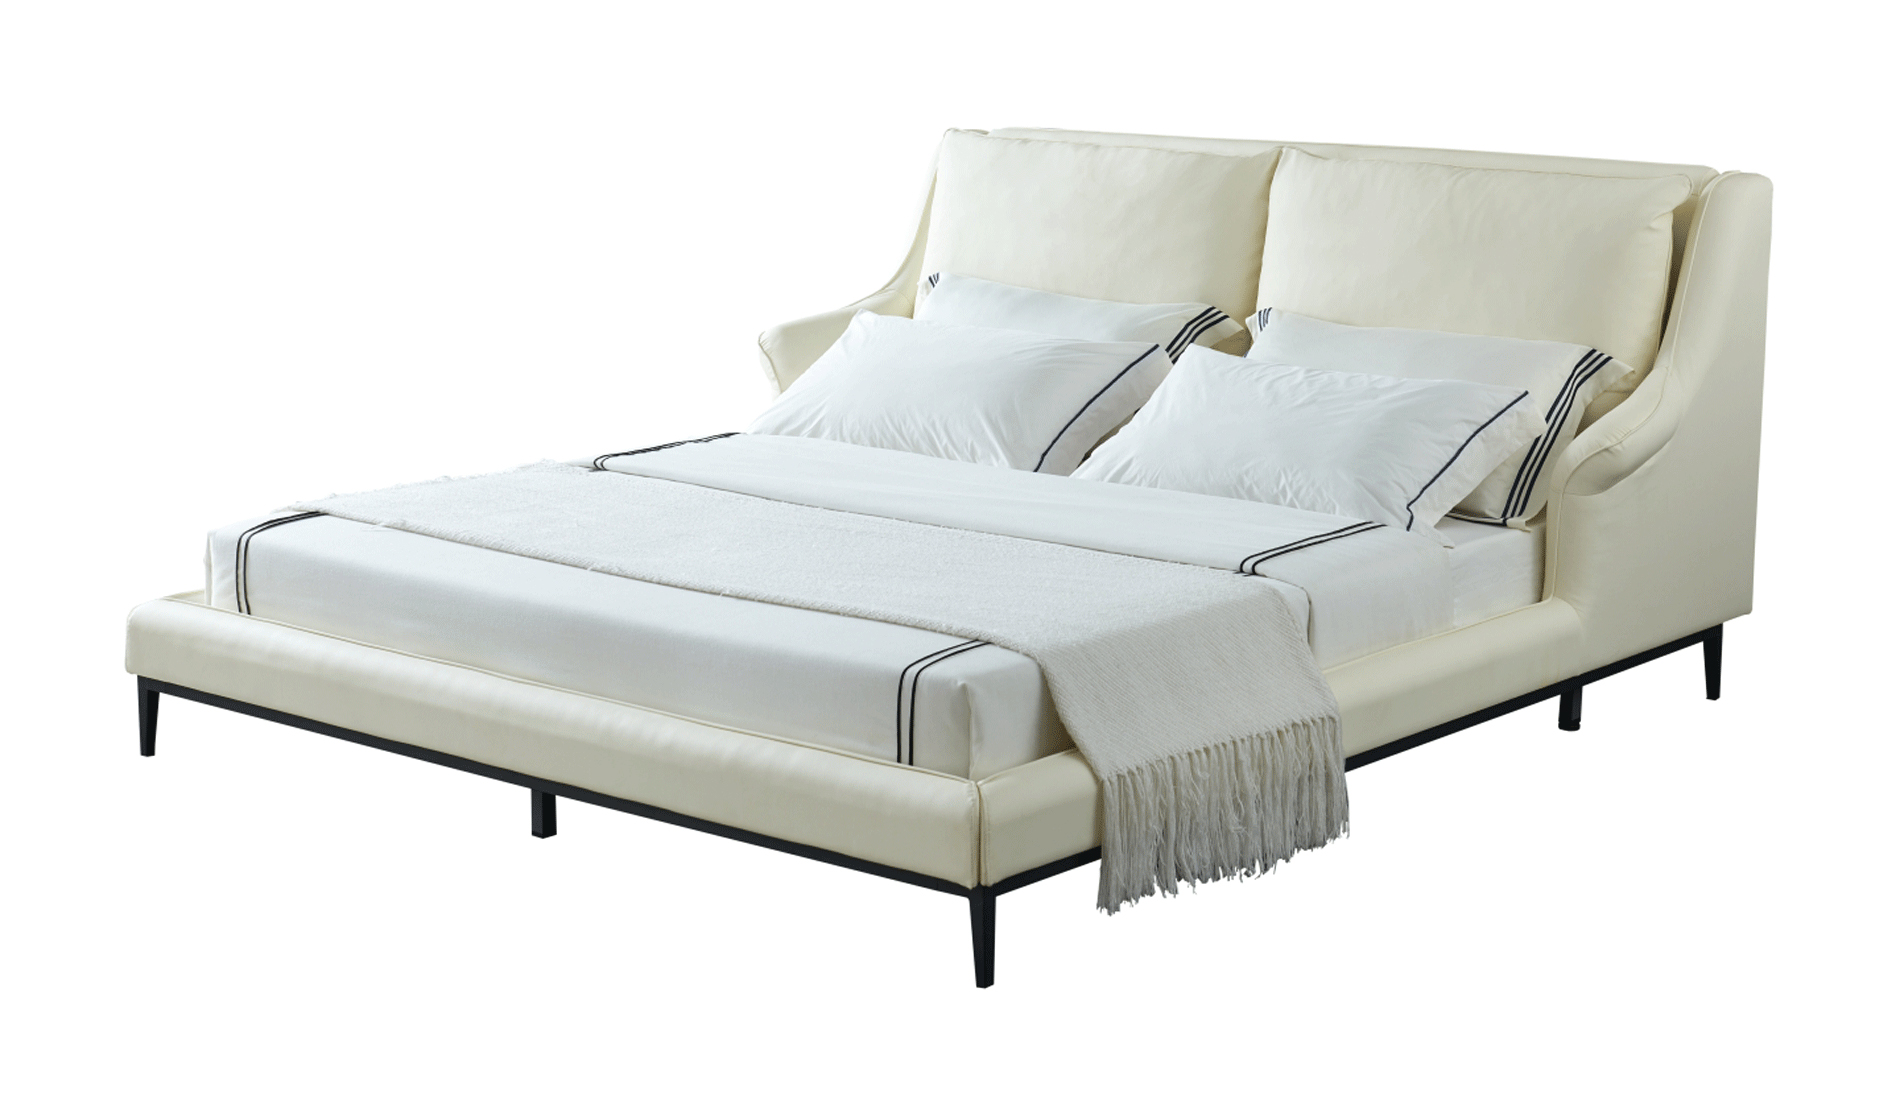 Bedroom Furniture Beds 6089 Bed